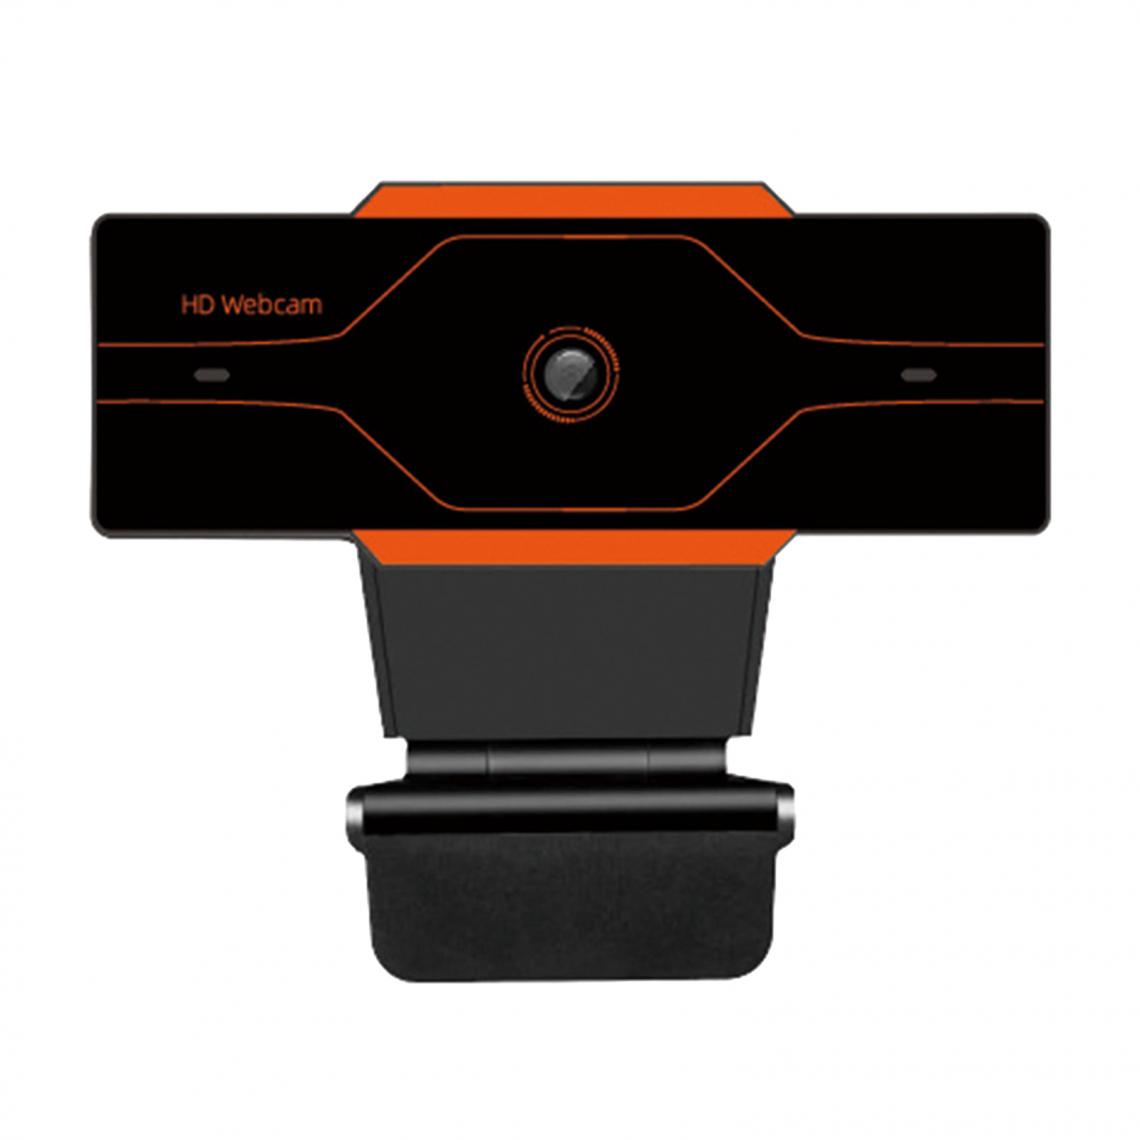 marque generique - Webcam HD Caméra Web Cam Microphone Pour Ordinateur Portable PC 720P Orange - Webcam